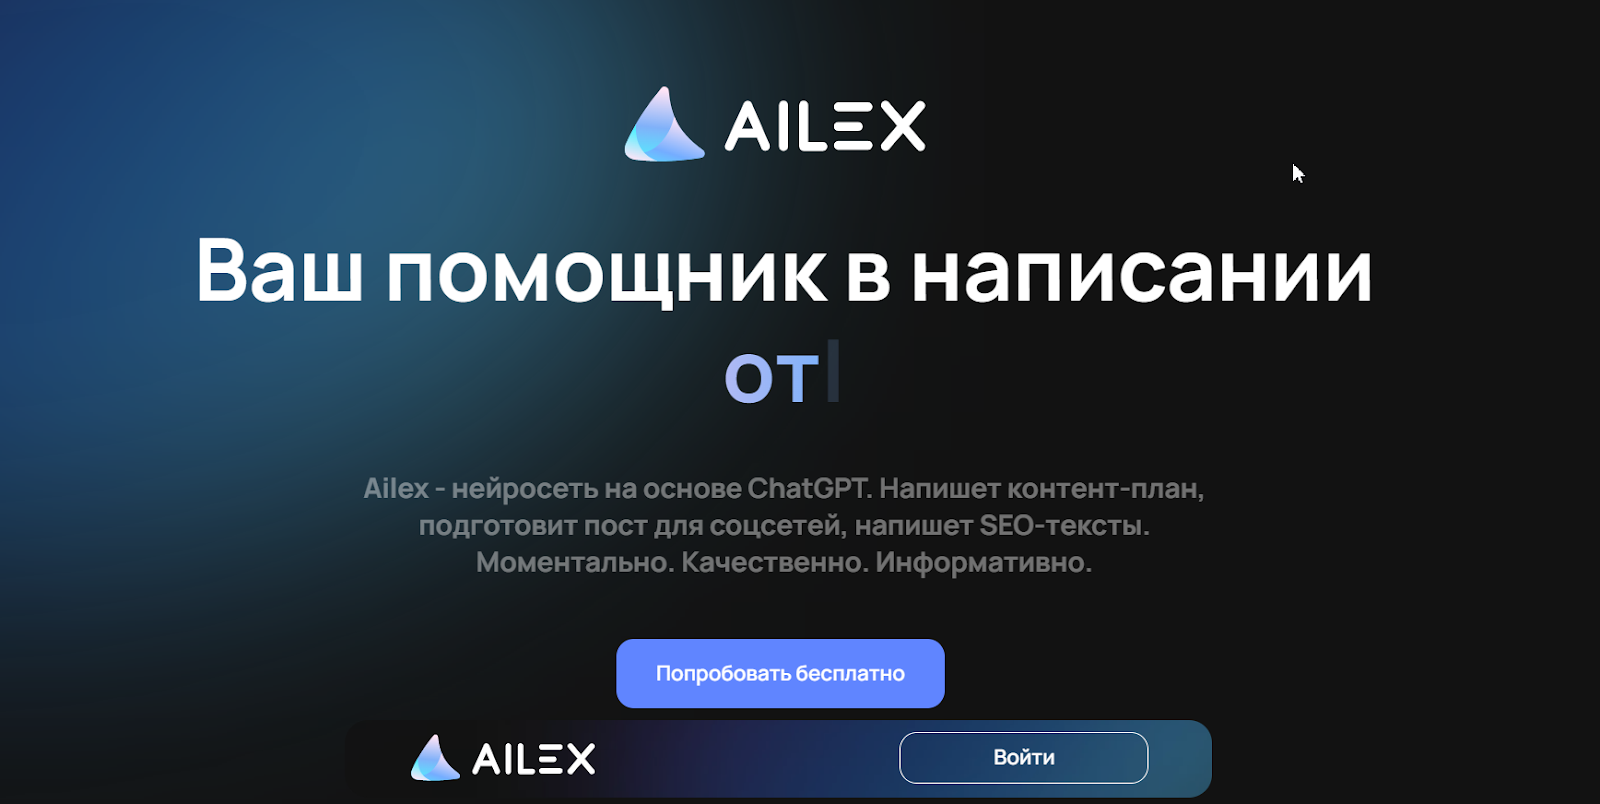 AILEX - генерация текстов для учебы и бизнеса